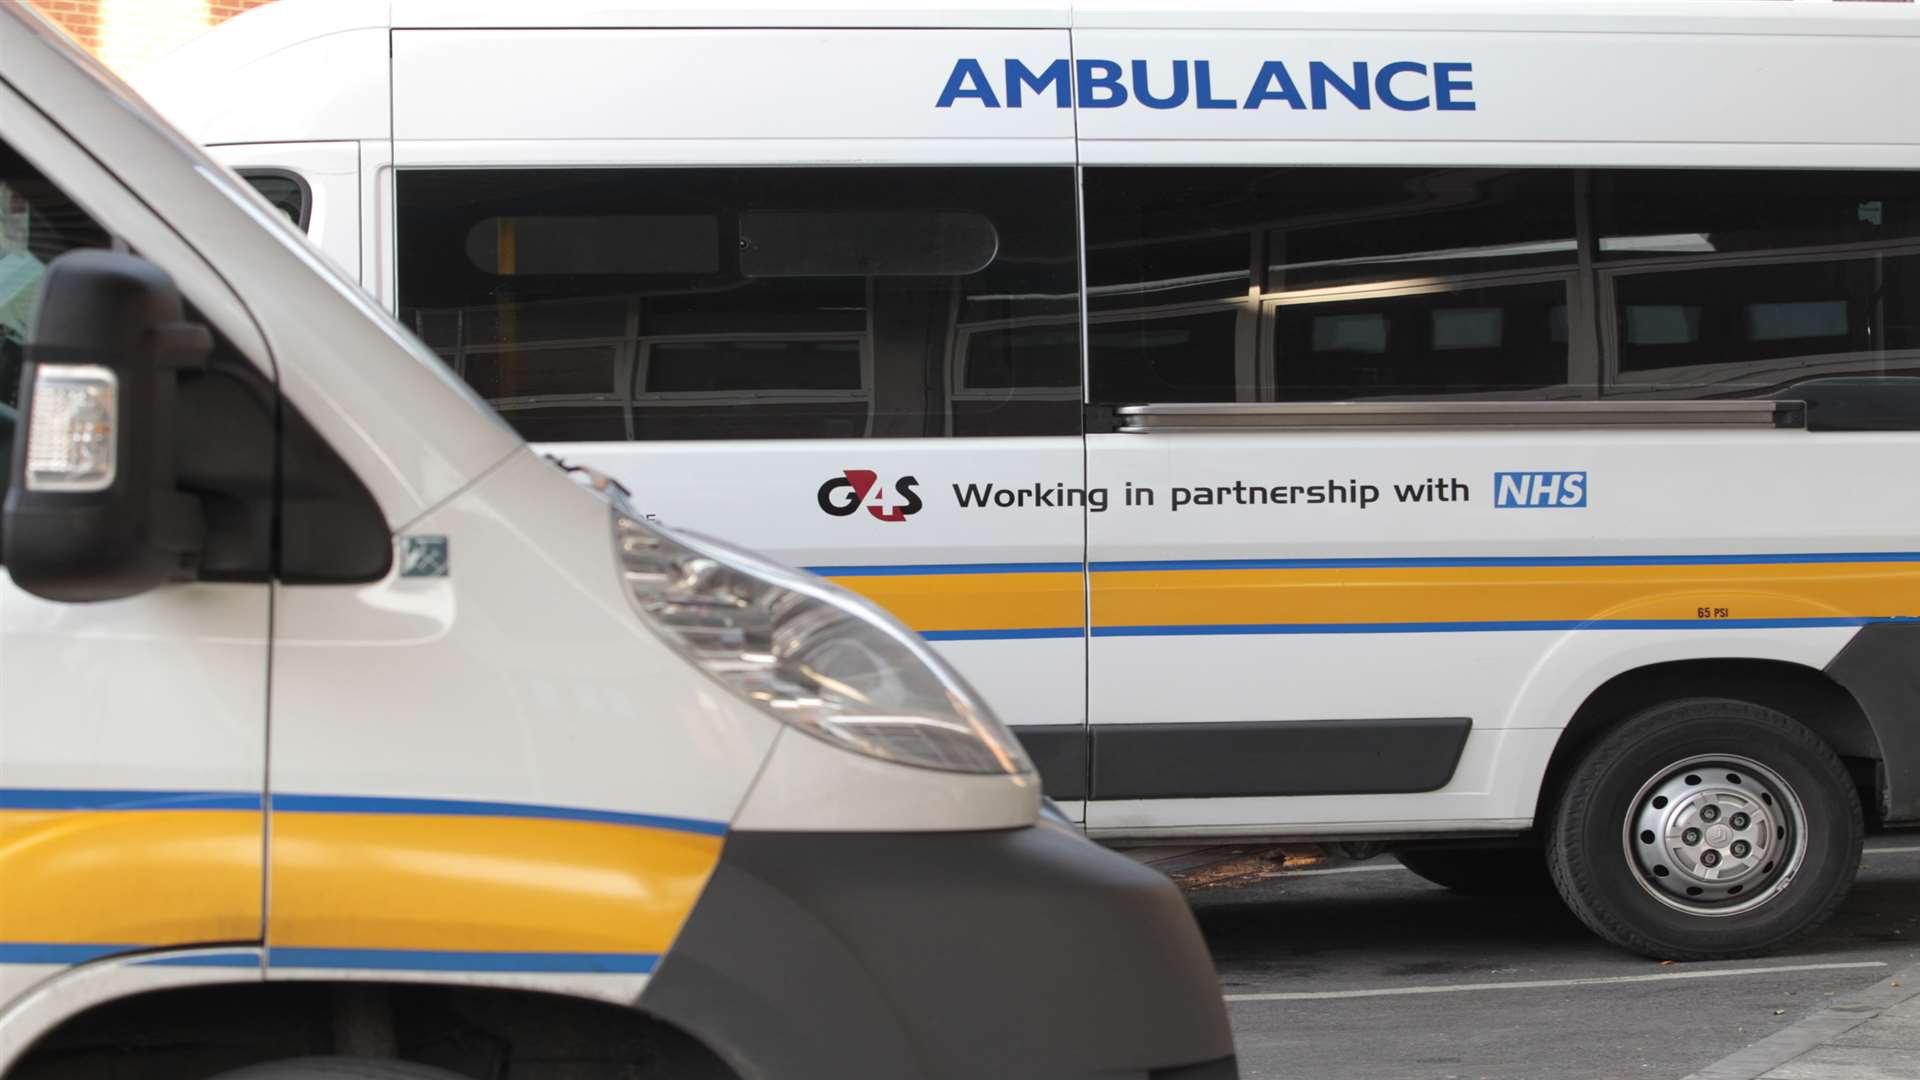 G4S patient transport services